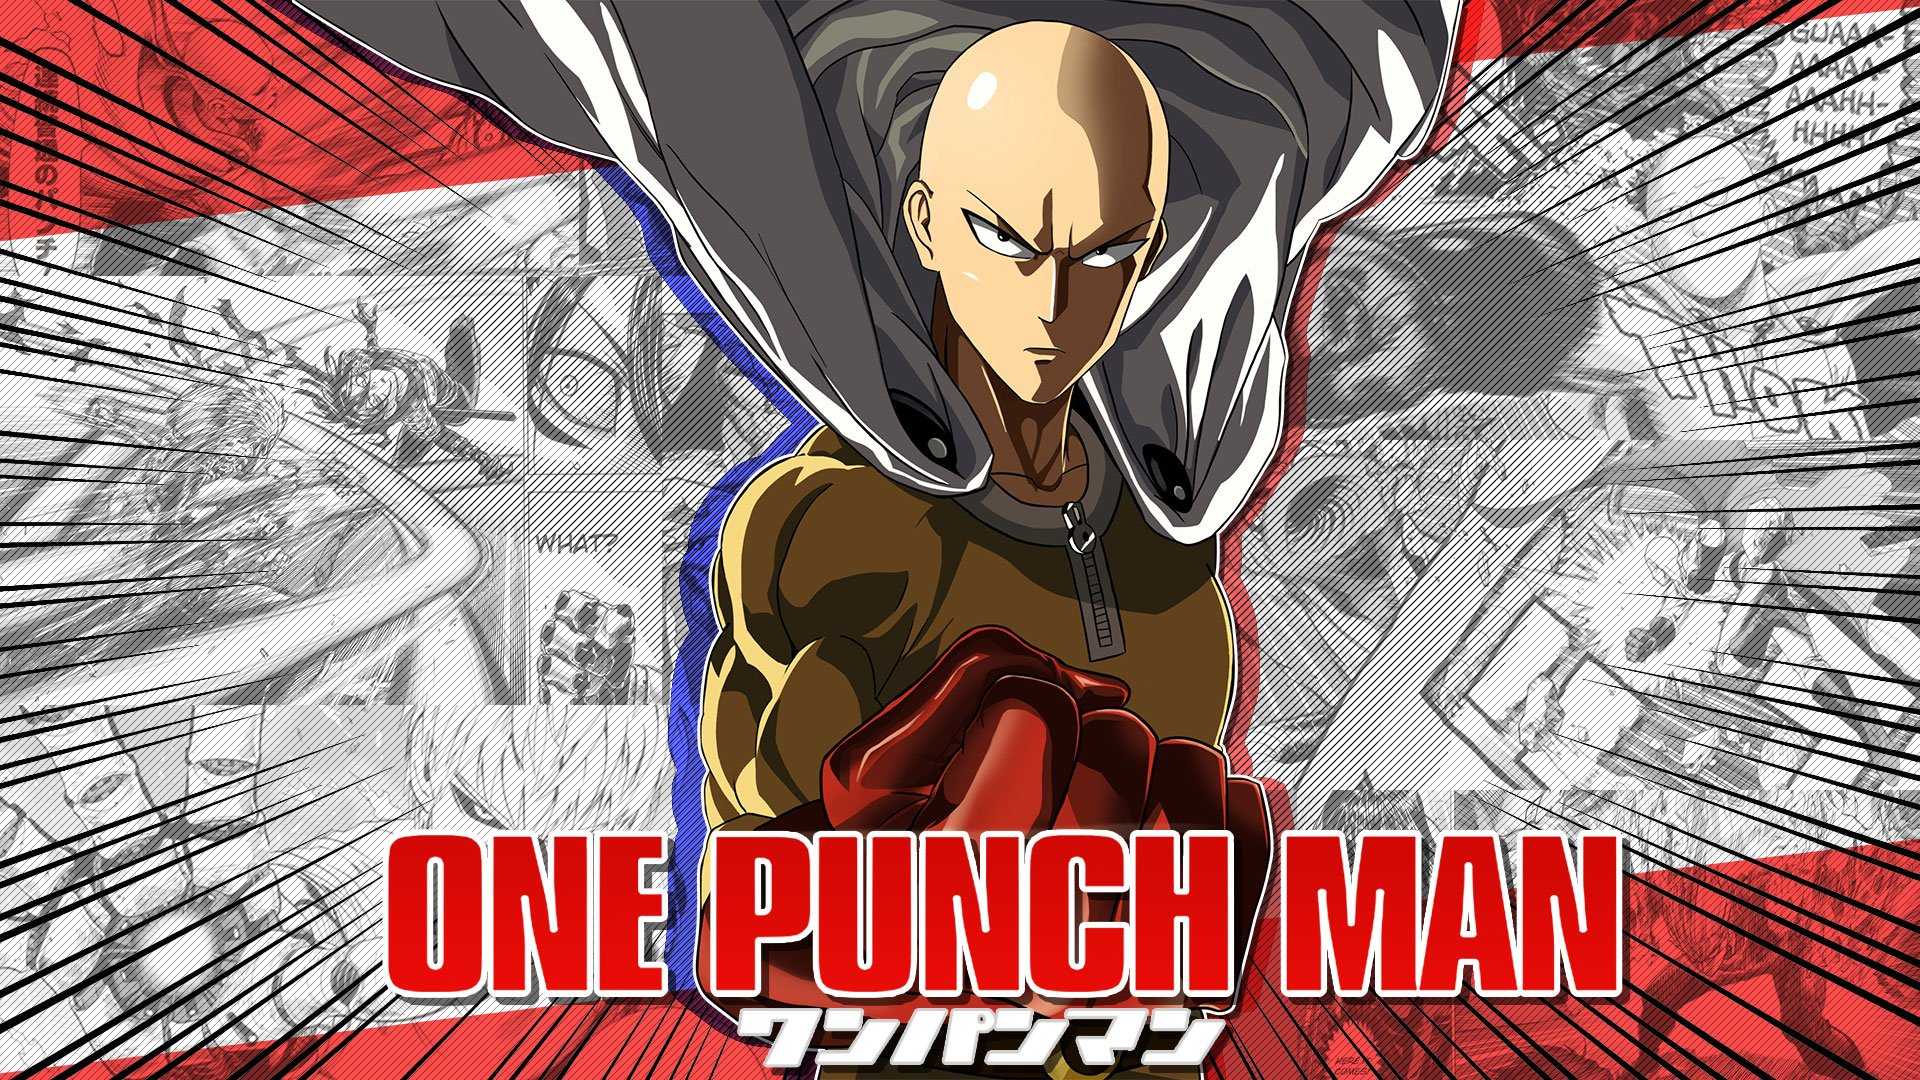 Wallpaper Saitama One Punch Man Anime Genos Anime Art Background   Download Free Image